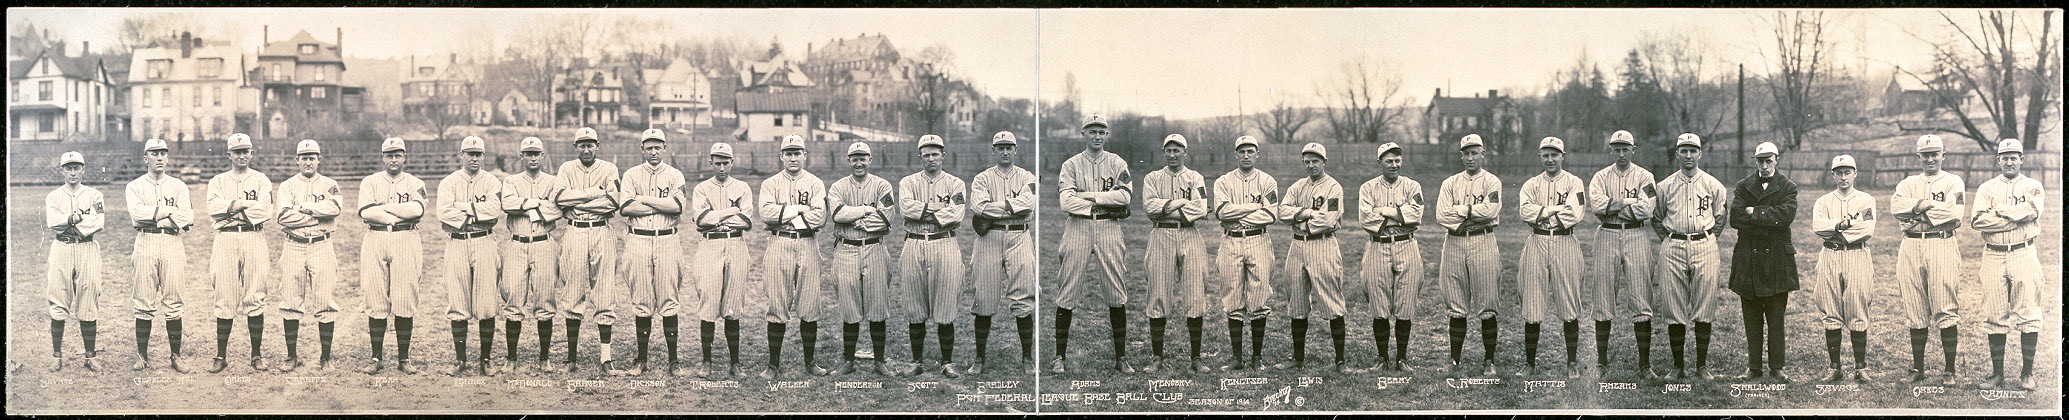 Pgh. Pgh. Federal League baseball club, season of 1914.jpg